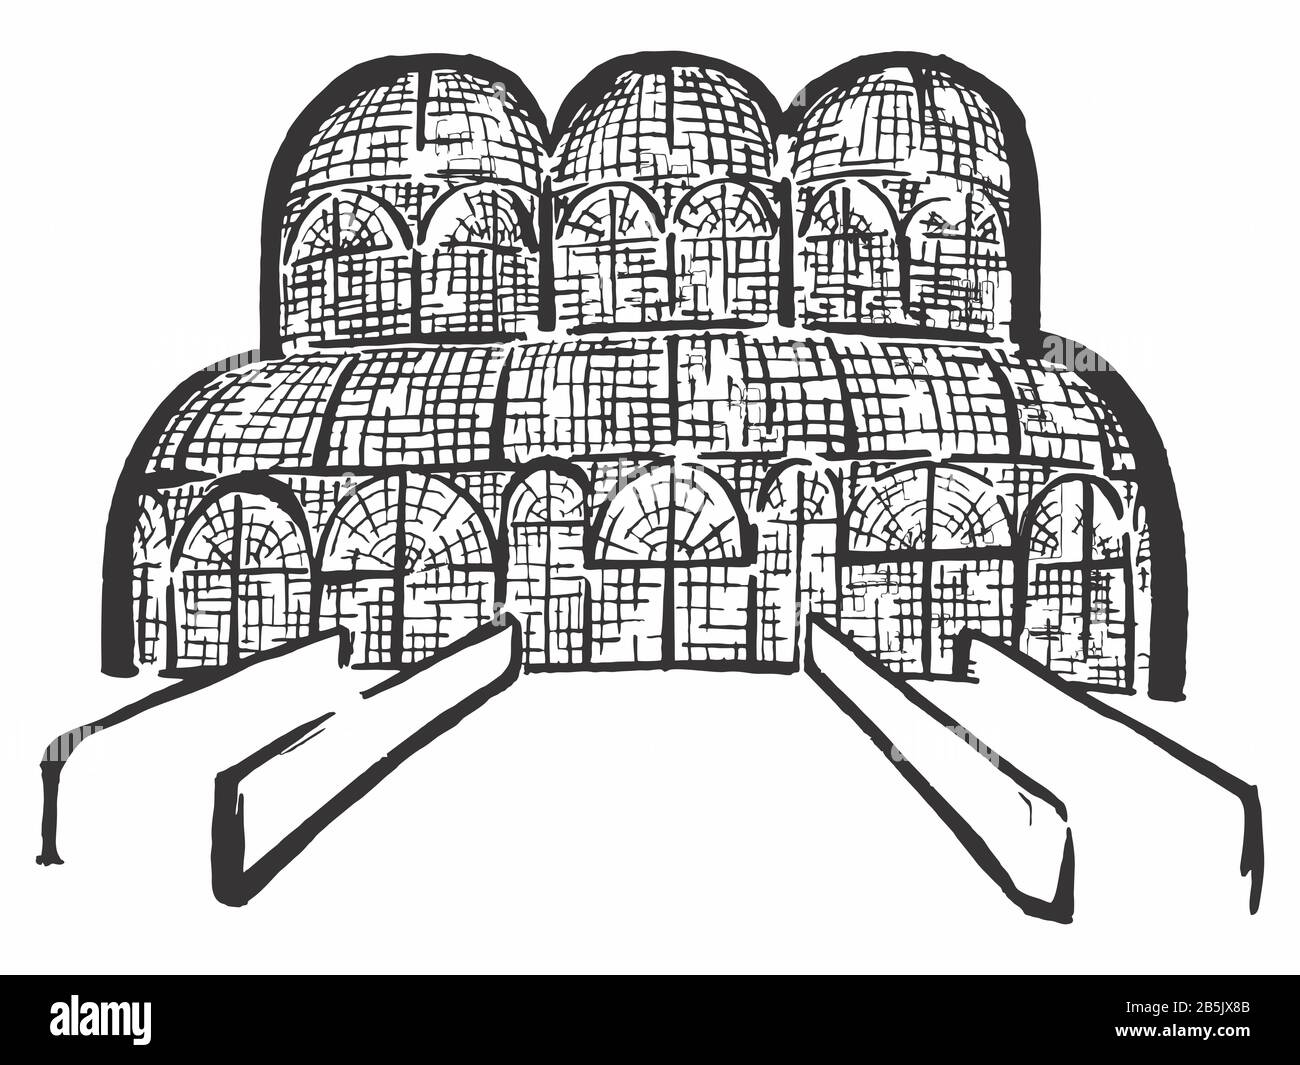 Tuschezeichnung des Gewächshauses des Botanischen Gartens von Curitiba (Touristenort, Landmark, Berühmter Ort). Artistic Cartoon Style Manuelle Illustration. Stockfoto